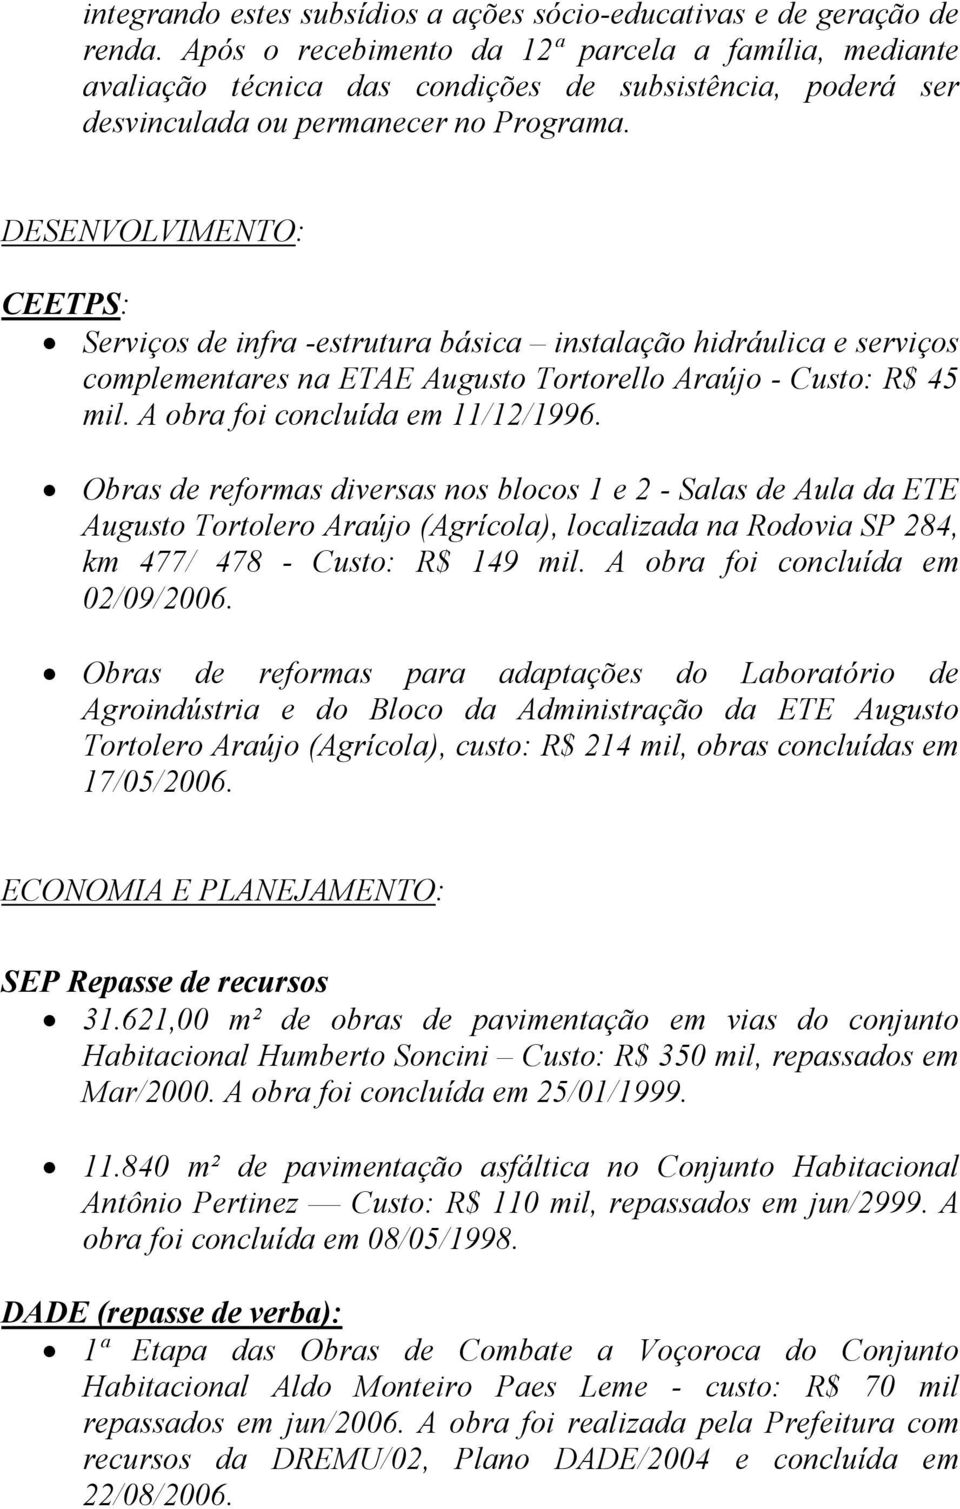 DESENVOLVIMENTO: CEETPS: Serviços de infra -estrutura básica instalação hidráulica e serviços complementares na ETAE Augusto Tortorello Araújo - Custo: R$ 45 mil. A obra foi concluída em 11/12/1996.